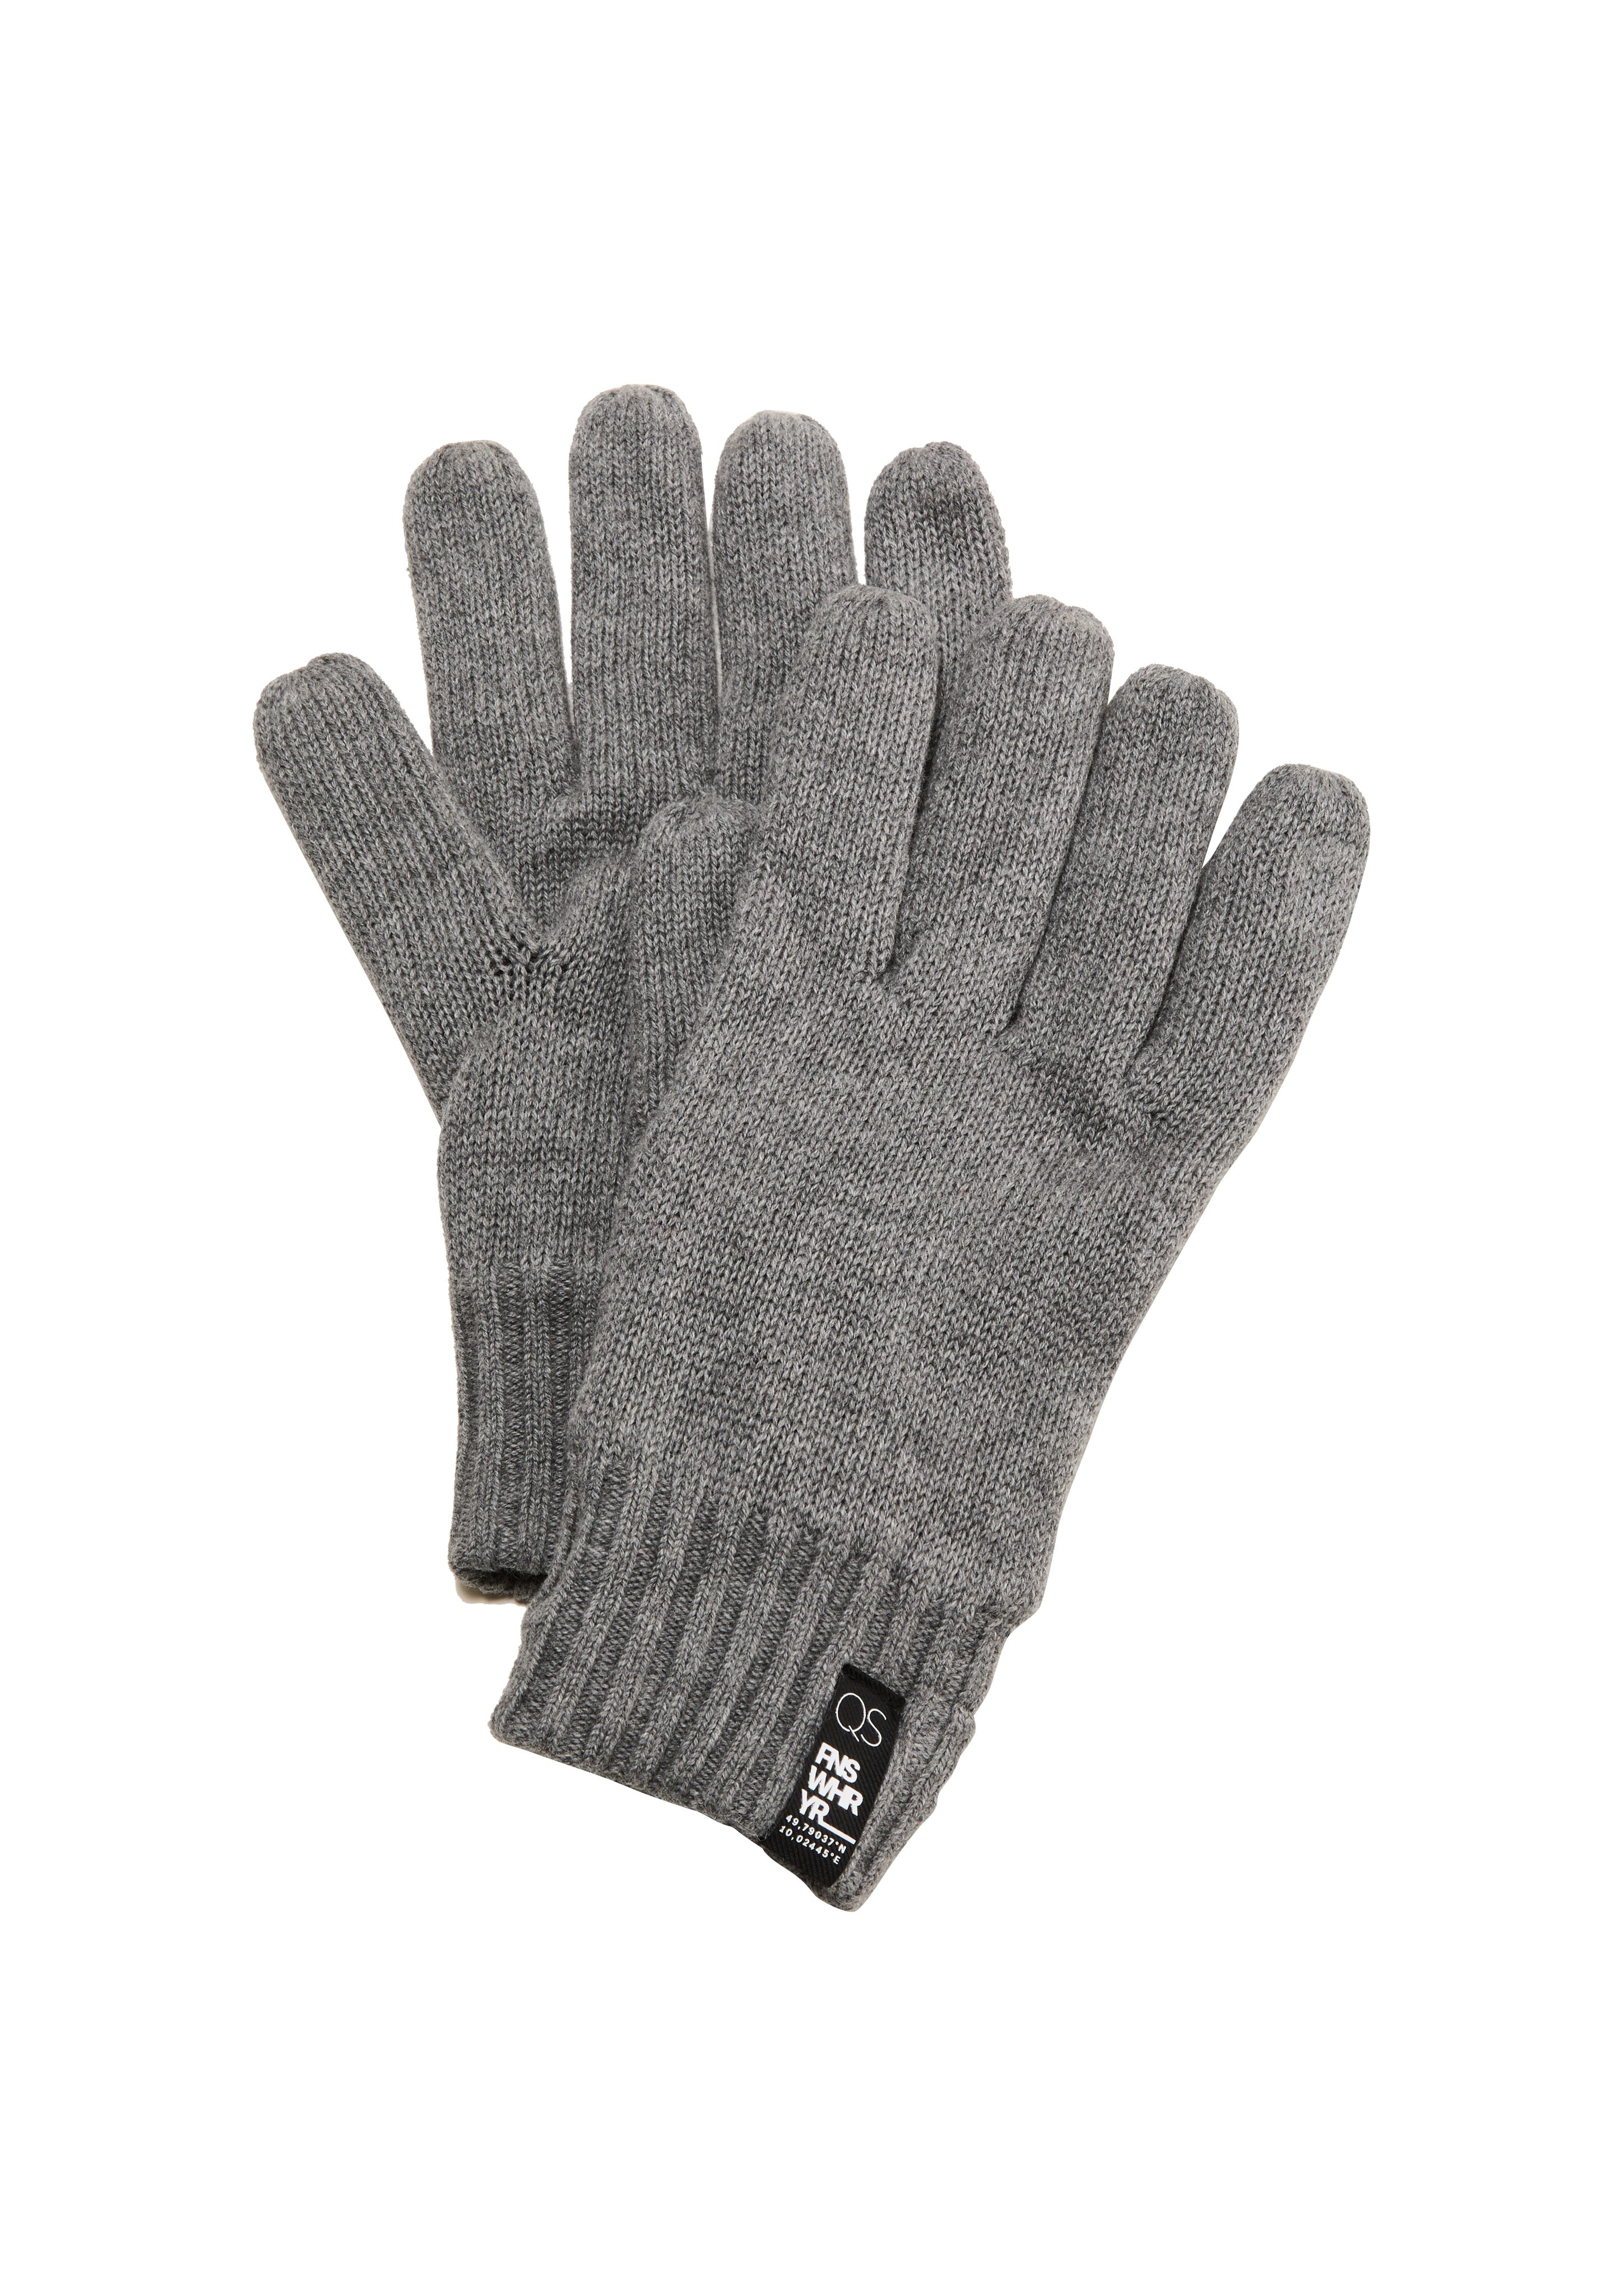 QS mit Strickhandschuhe Handschuhe Fleece-Futter